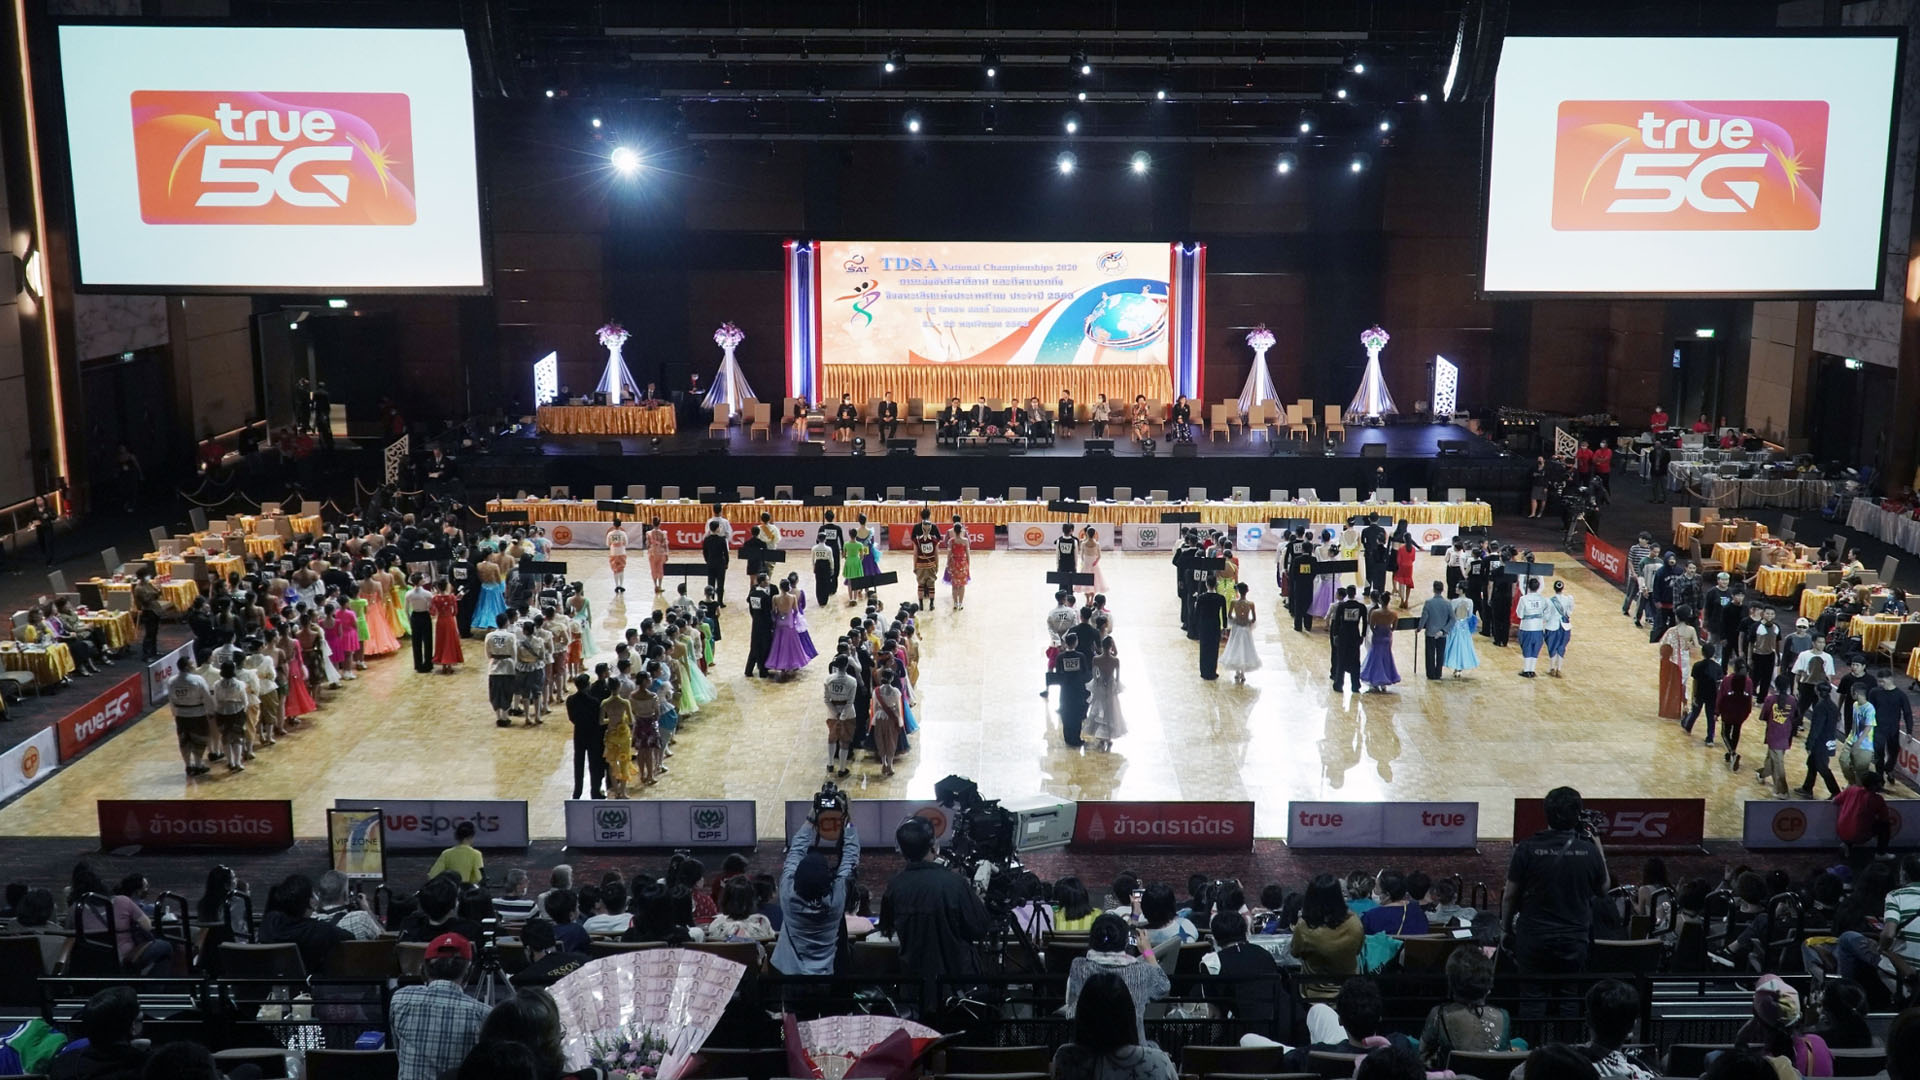 0 - การแข่งขันกีฬาลีลาศ และการแข่งขันกีฬาเบรกกิ้งชิงชนะเลิศแห่งประเทศไทย ประจำปี 2563(TDSA National Championships 2020)